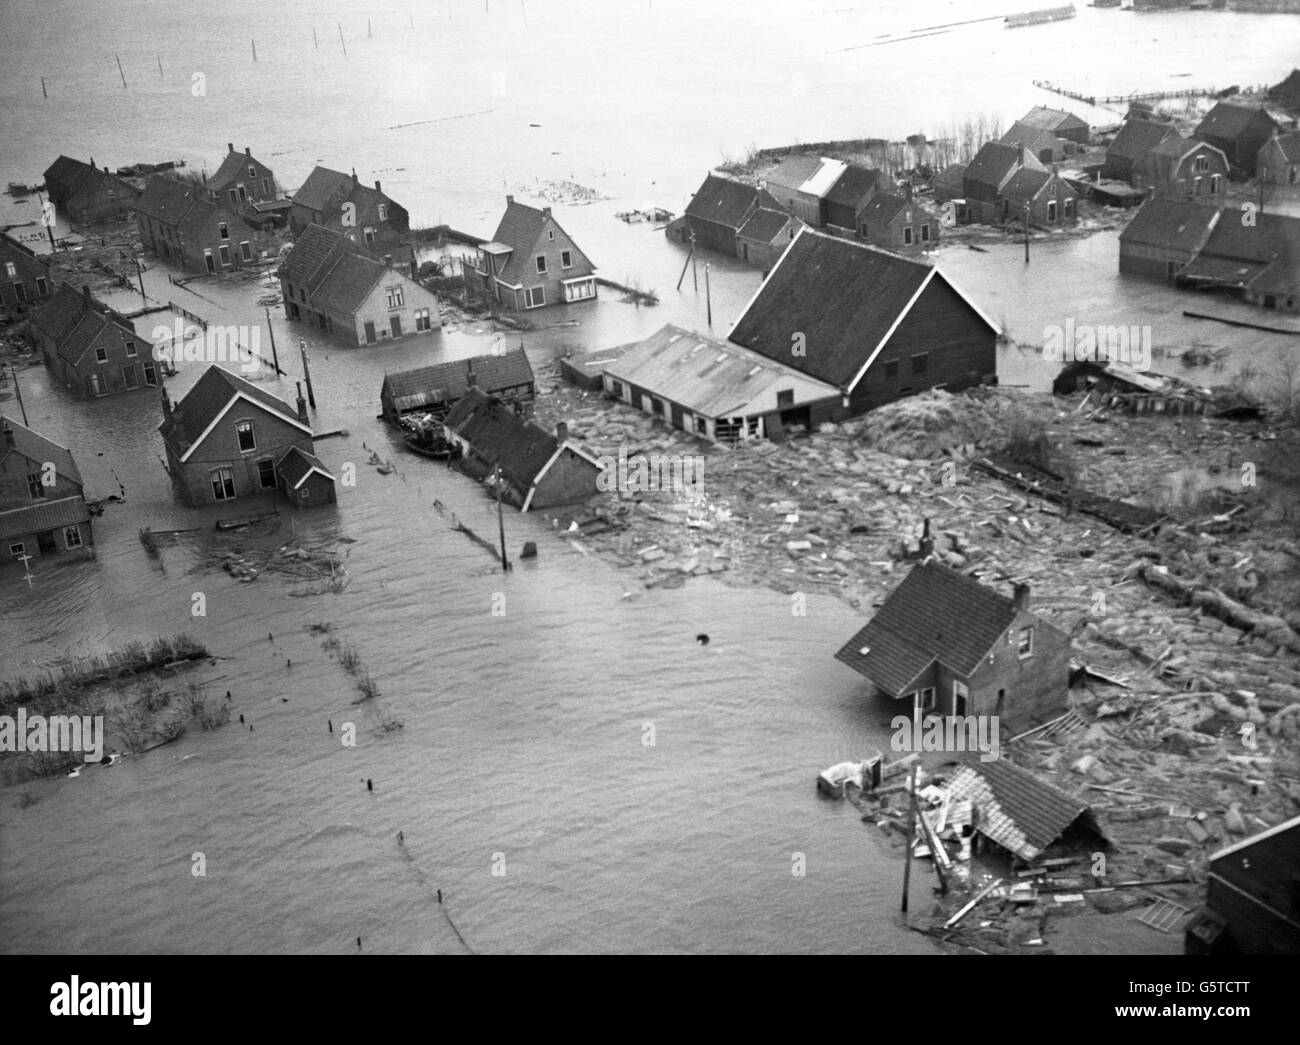 Le incessanti acque alluvionali devastano il villaggio di Zijpe sull'isola olandese di Schouwen Duiveland. Gli edifici martoriati si trovano abbandonati in mezzo alle acque alluvionali. Foto Stock